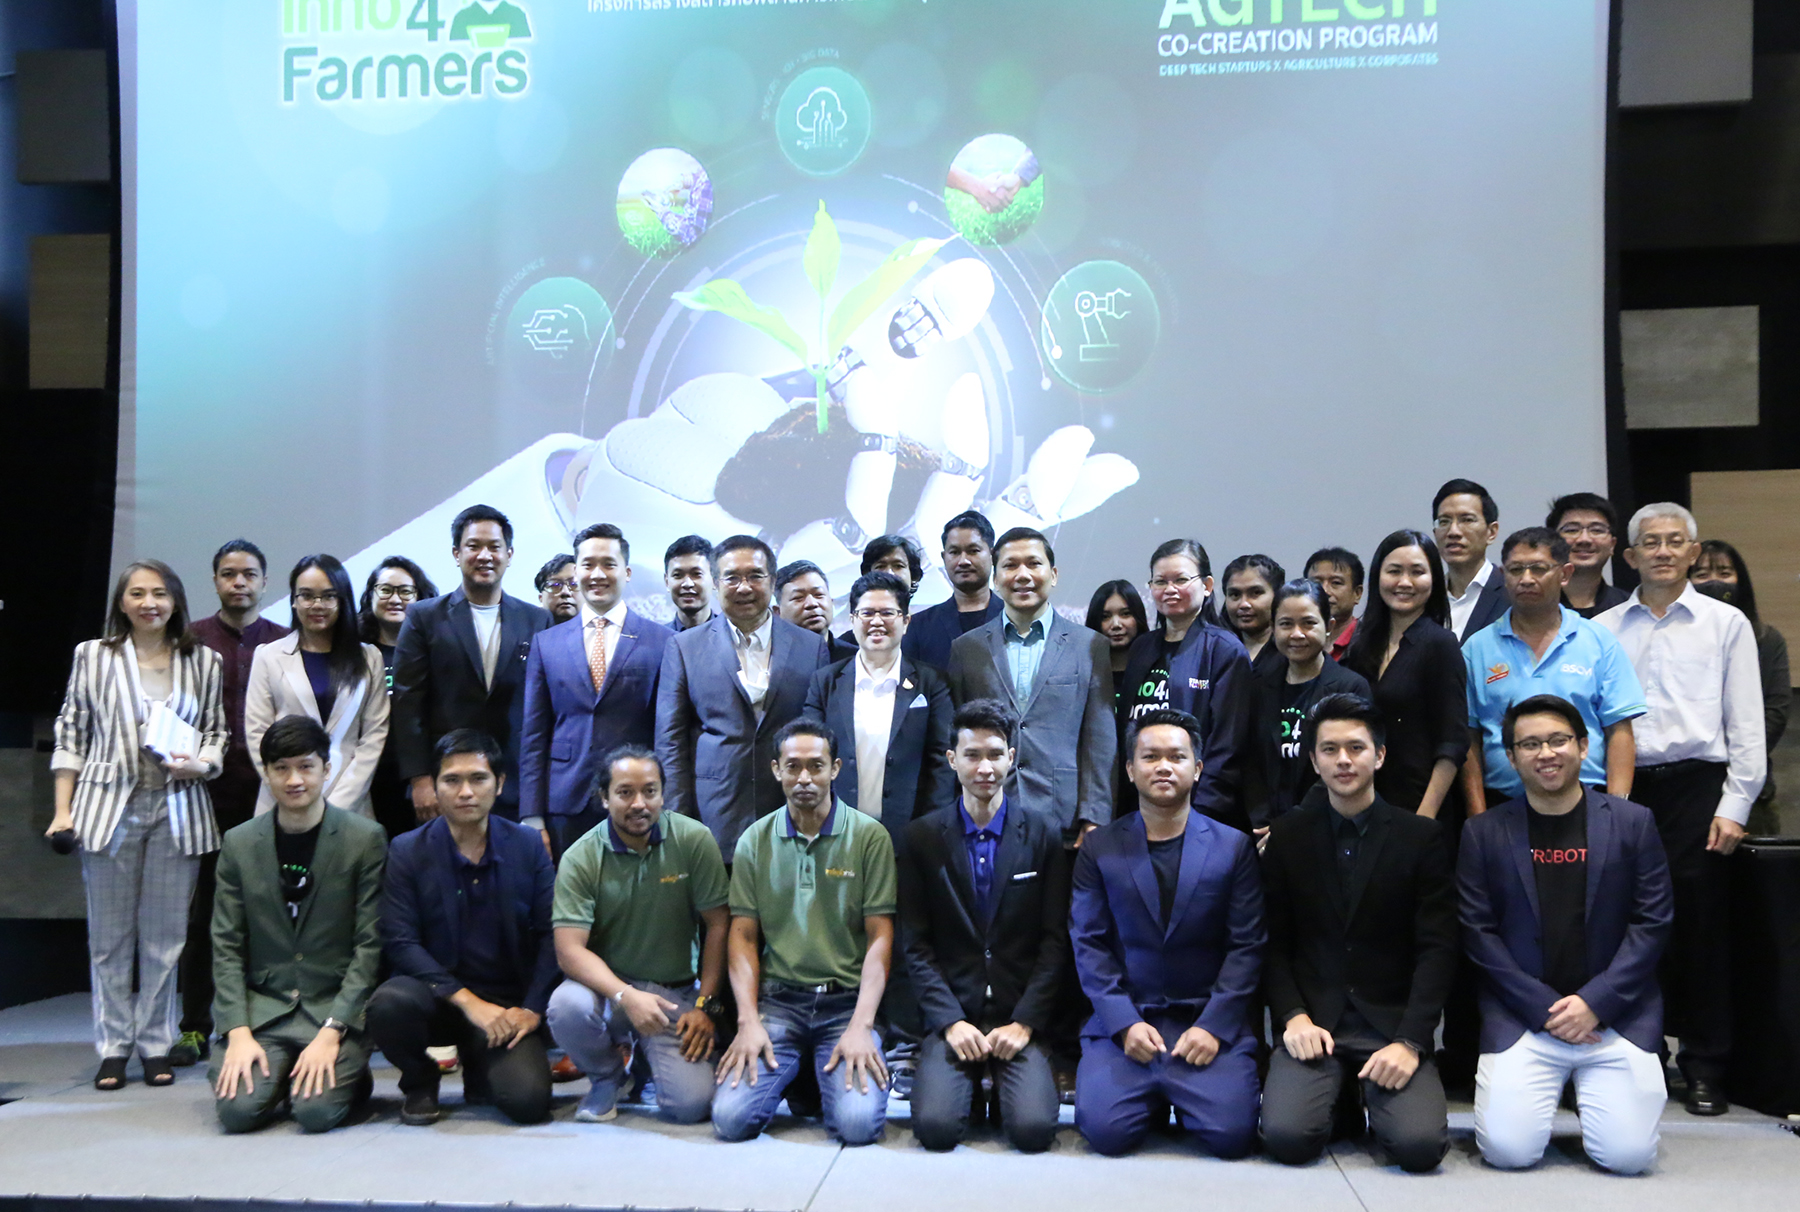 เอ็นไอเอ ดัน อินโนฟอร์ฟาร์มเมอร์ เวทีจับคู่สตาร์ทอัพเกษตรกับบิ๊กเอกชน หวังทรานส์ฟอร์มเกษตรไทยด้วยดีพเทค